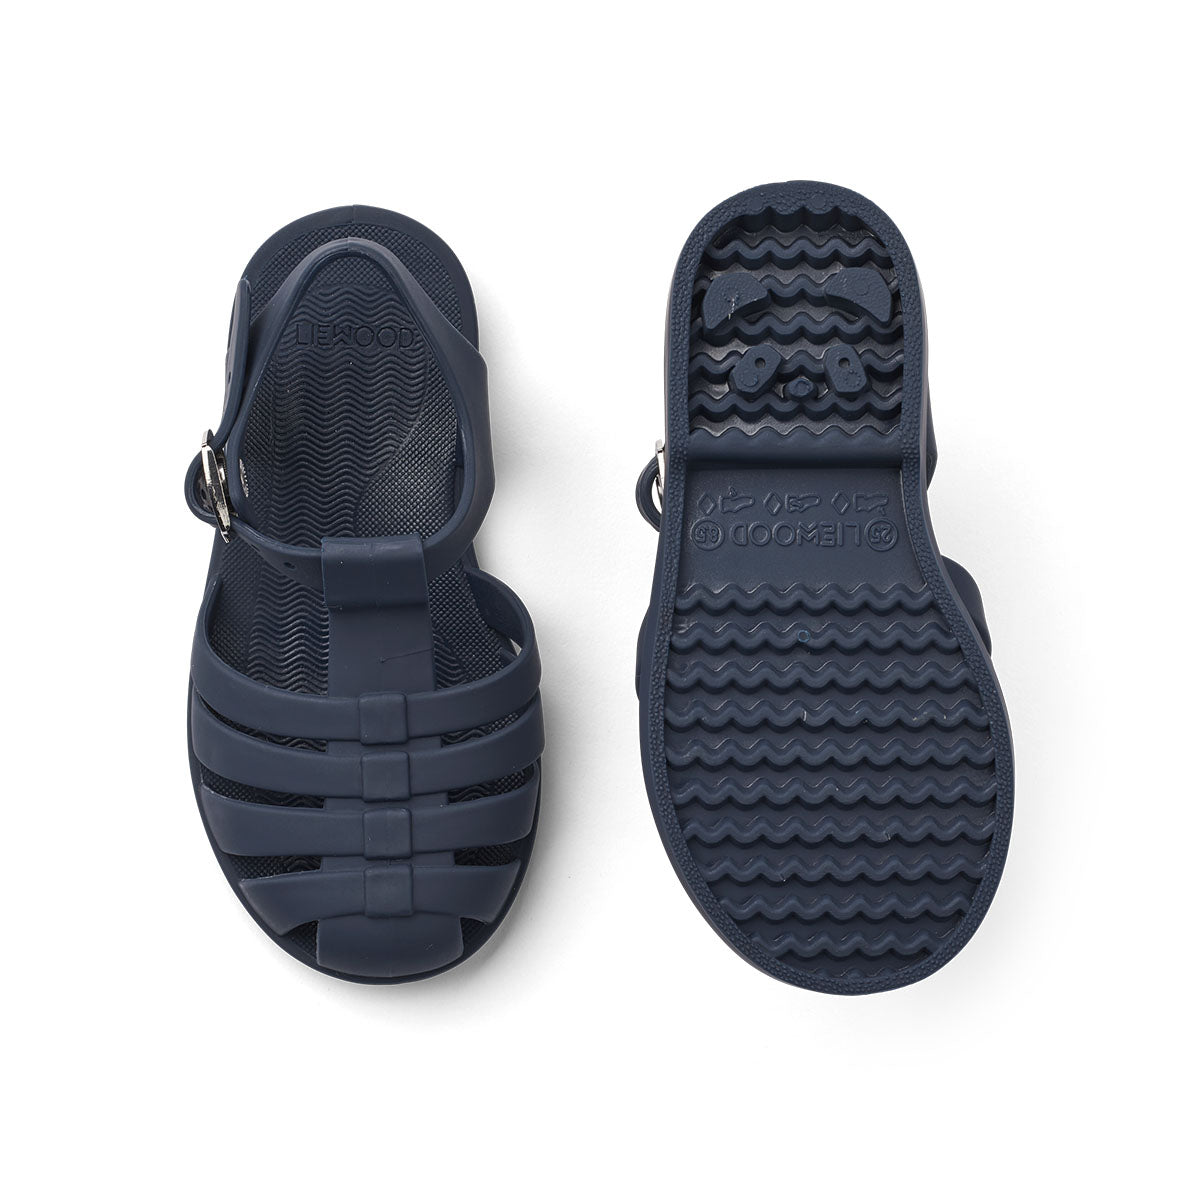 Ben je op zoek naar praktische én hippe waterschoenen? Dan zijn deze bre sandalen van Liewood in de kleur classic navy een goede keus! Dankzij het flexibele materiaal en de verstelbare bandjes zijn deze donkerblauwe waterschoentjes perfect voor op het strand of aan het water en heel comfortabel voor je kind. VanZus